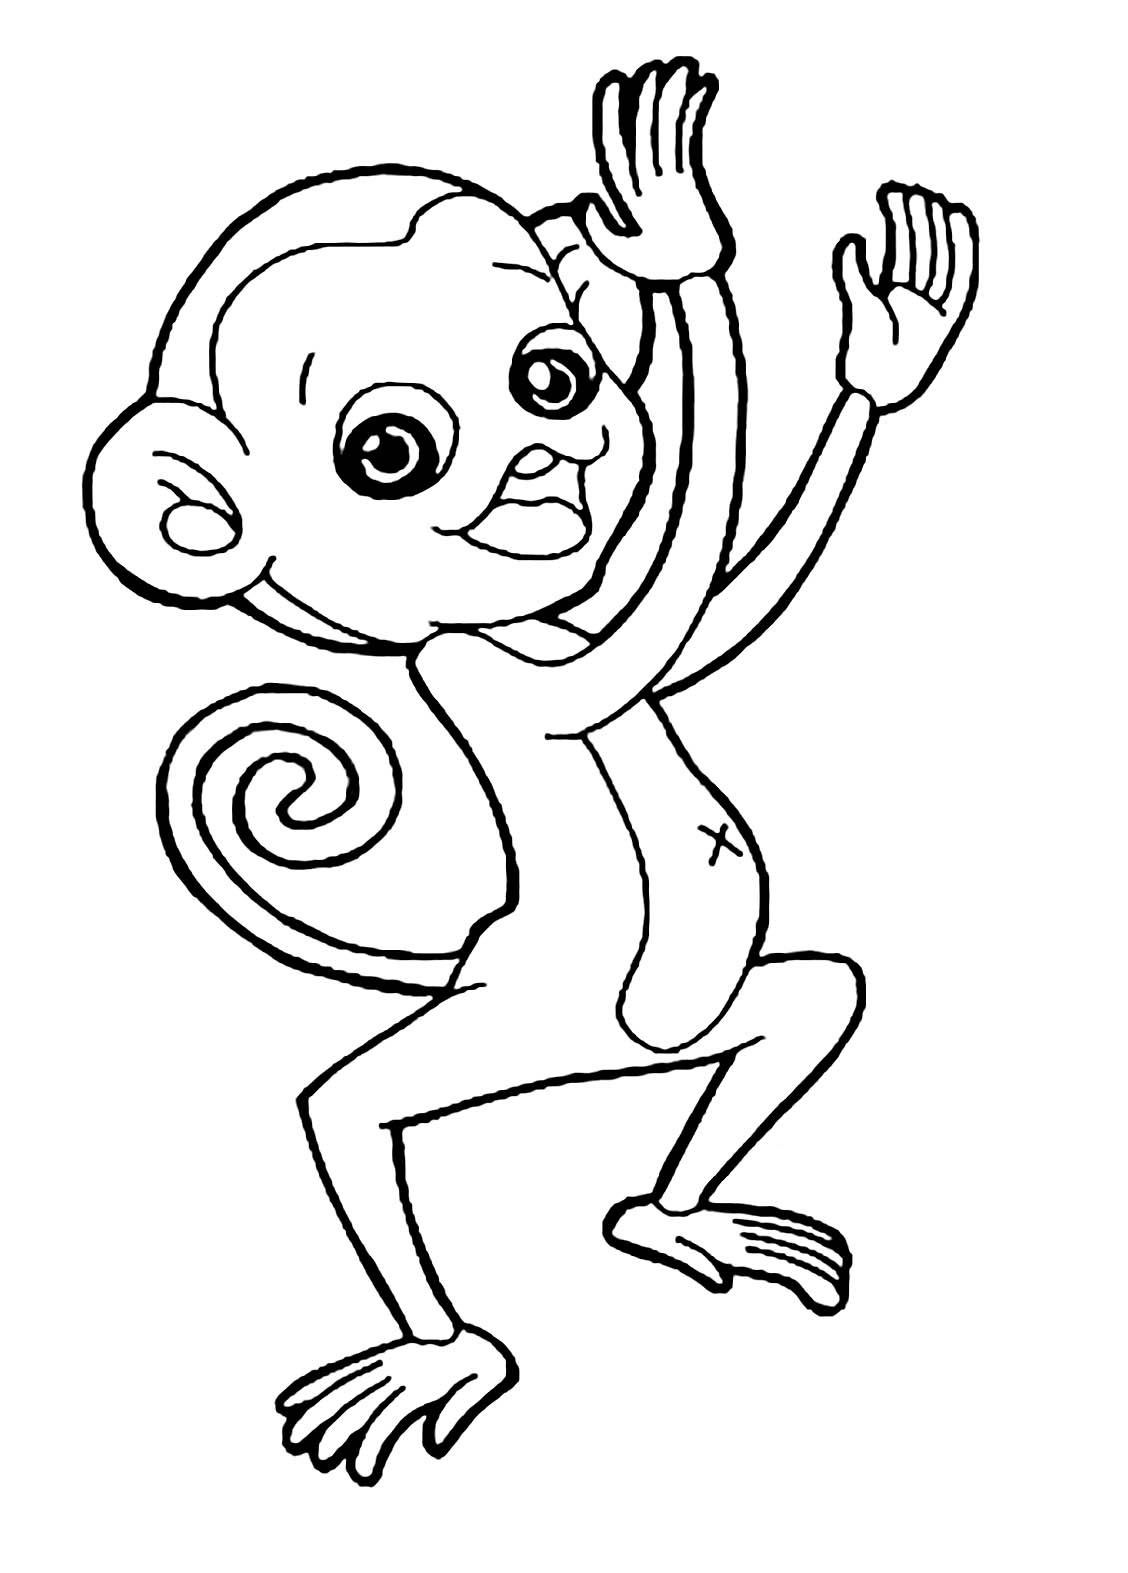 Tranh tô màu con khỉ giơ tay múa